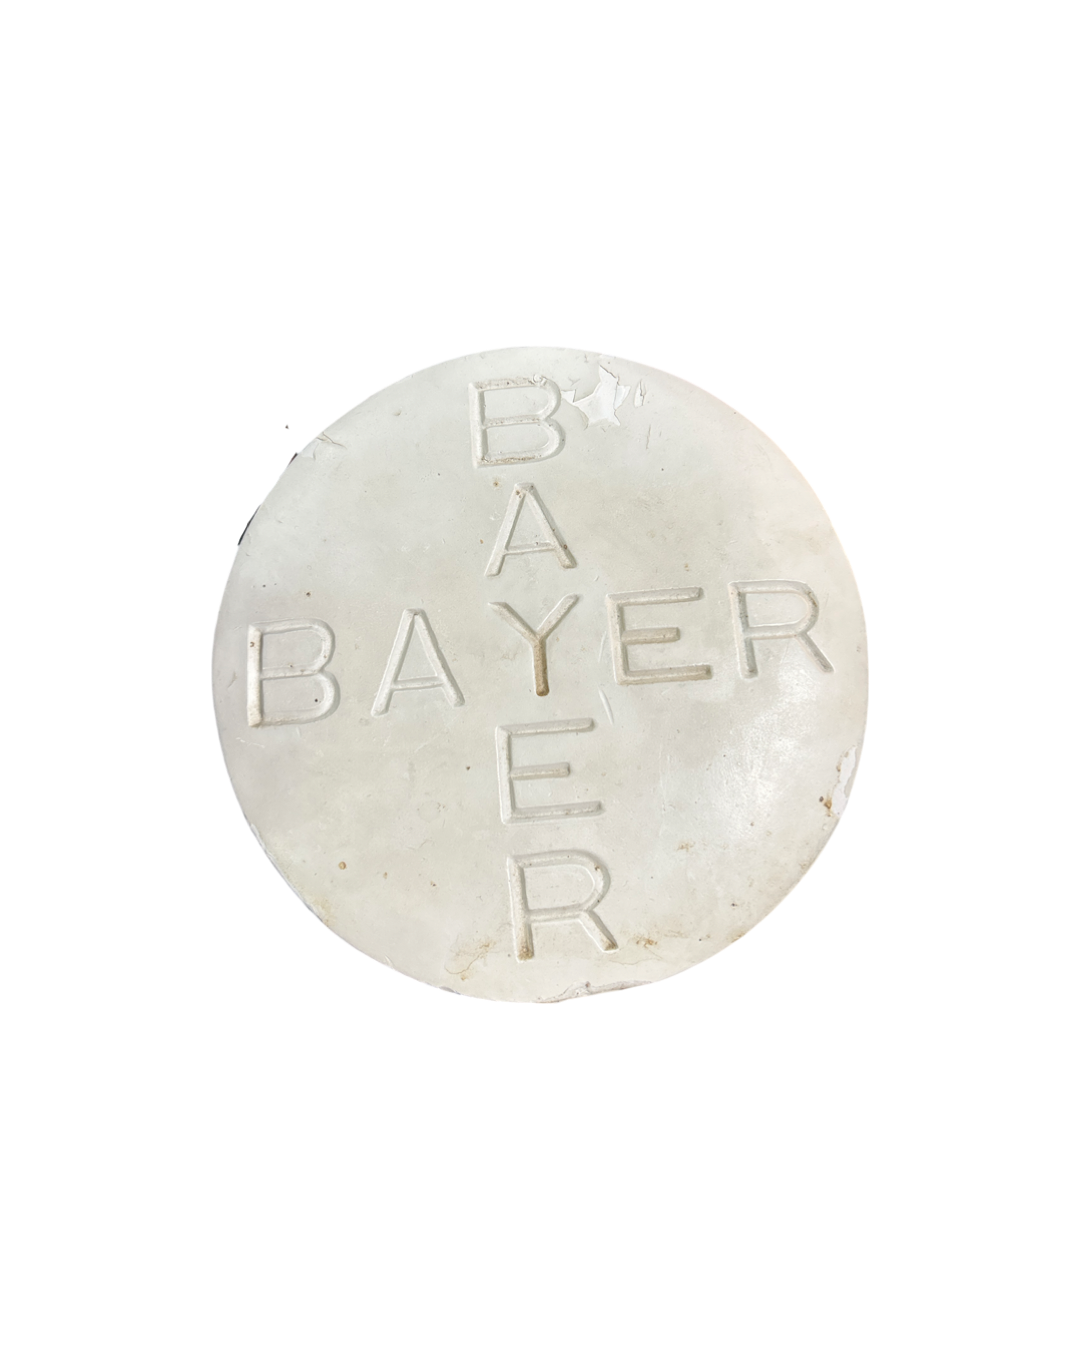 Bayer Aspirin Advertising Display, Vintage